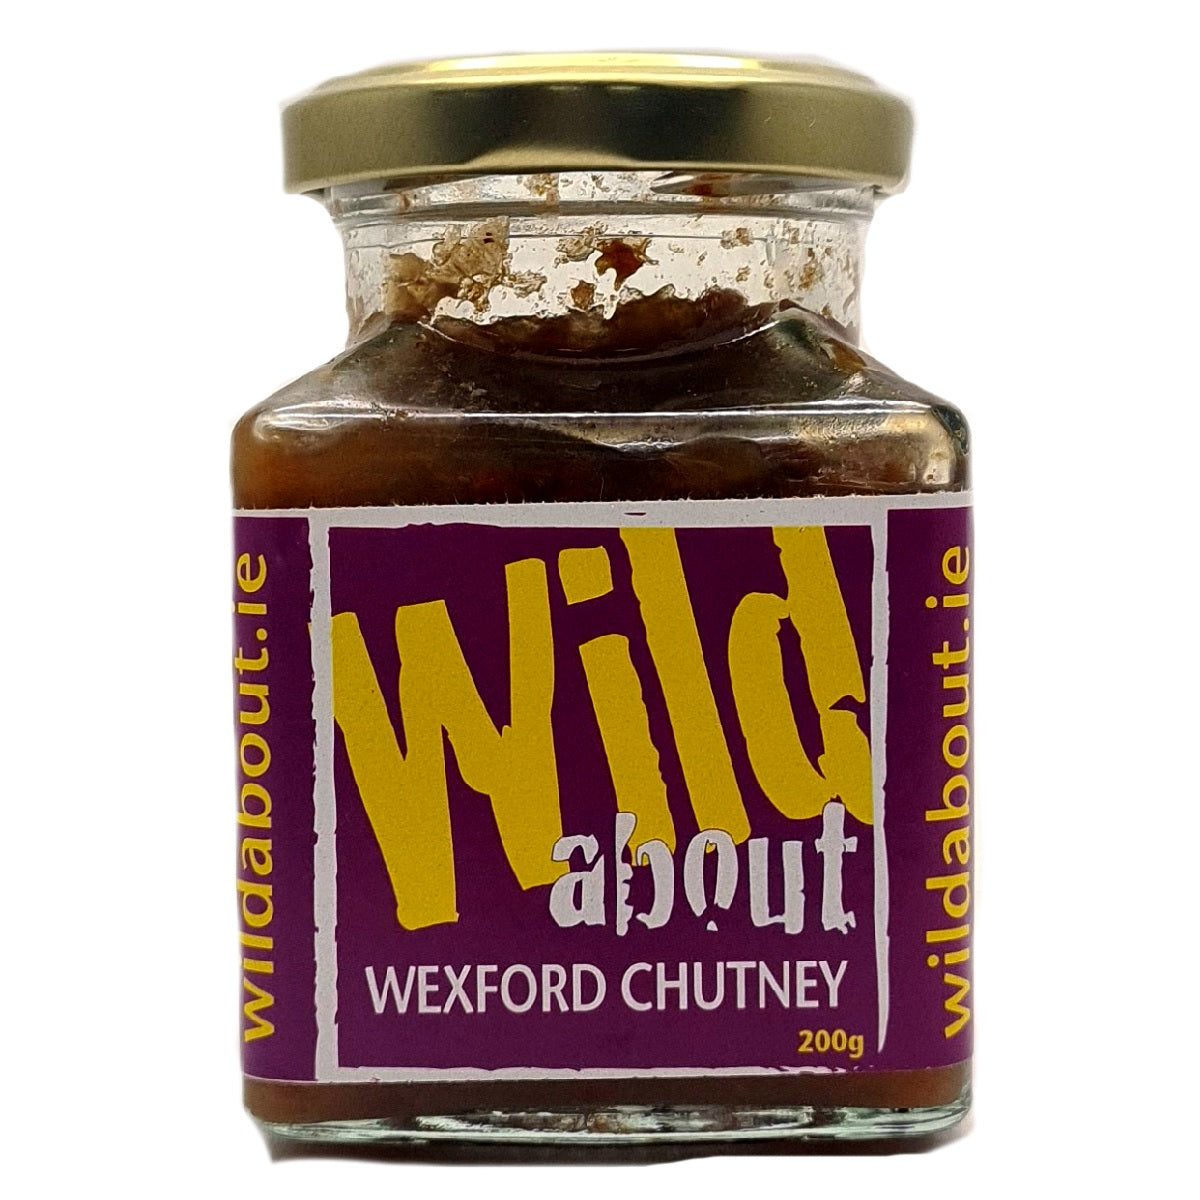 Wild About Wexford Chutney 200g